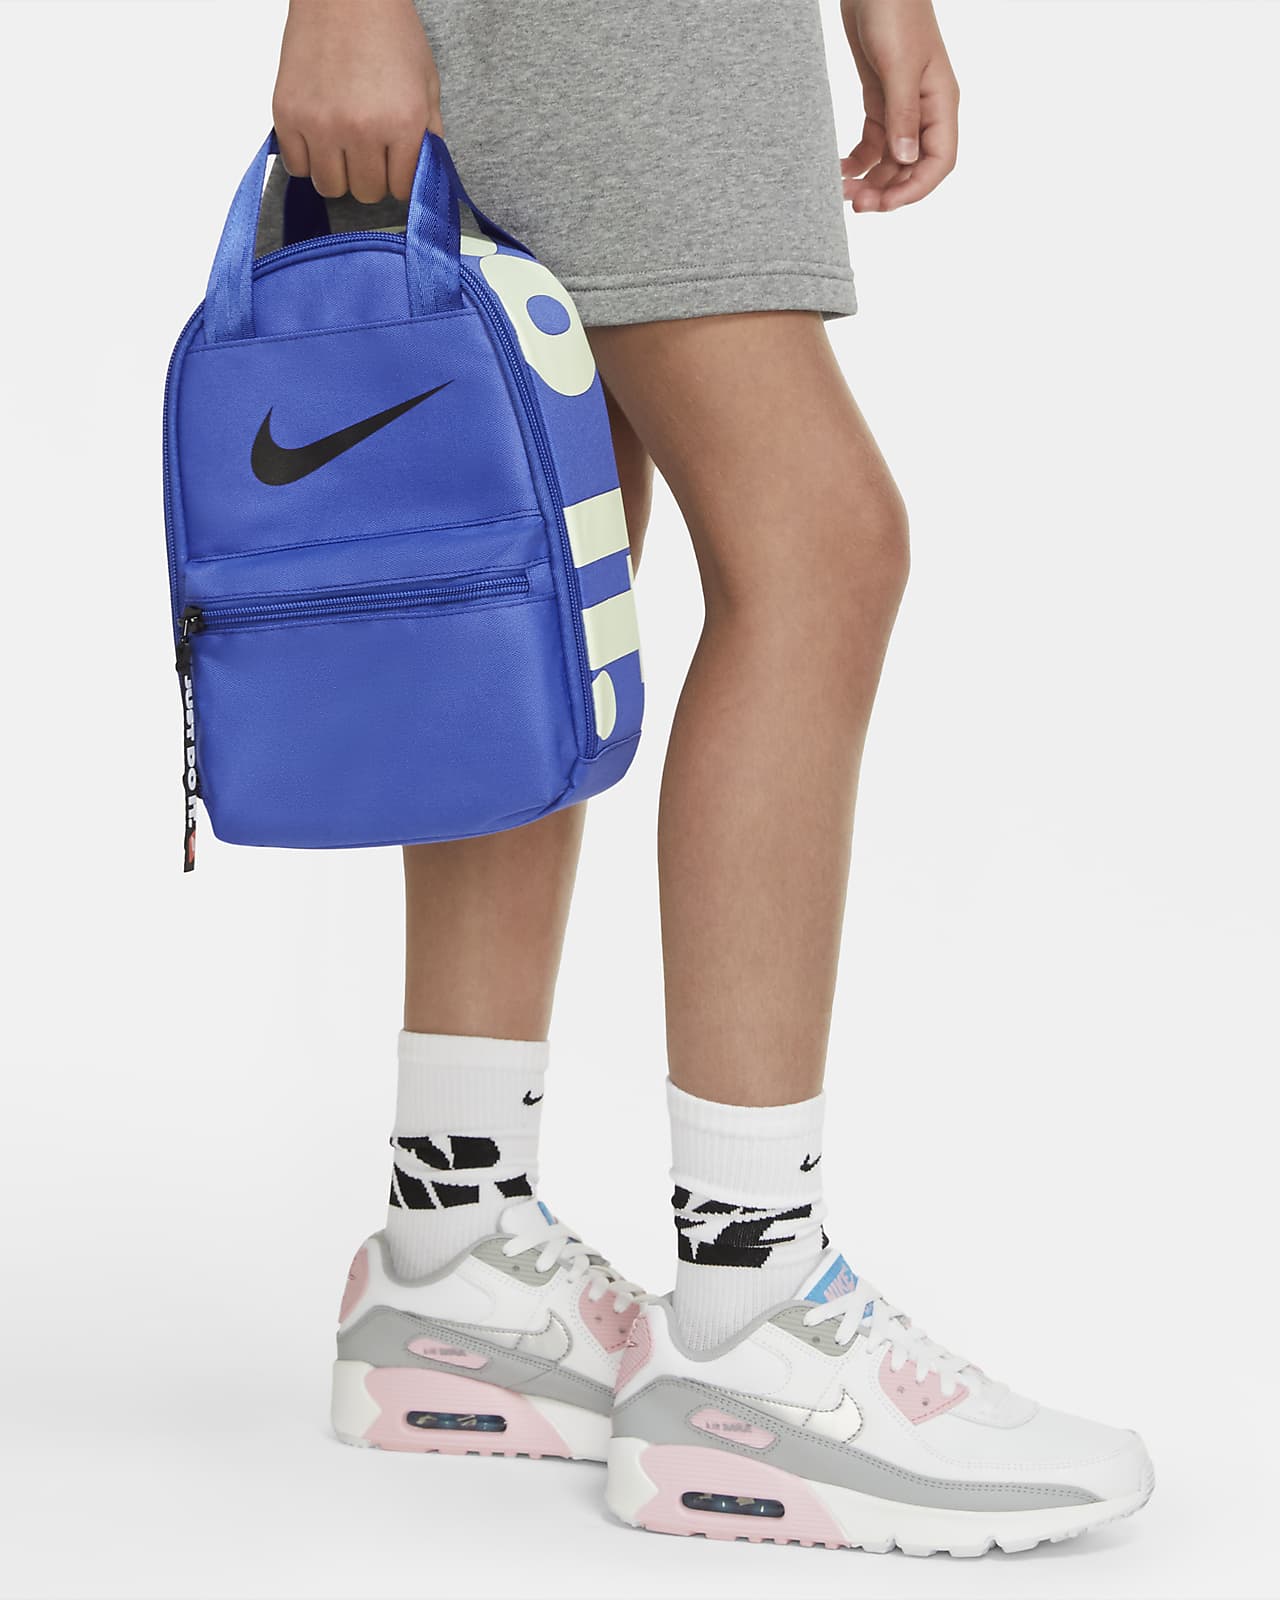 Nike Fuel Pack Lunch Bag in Orange | 9A2937-N4U